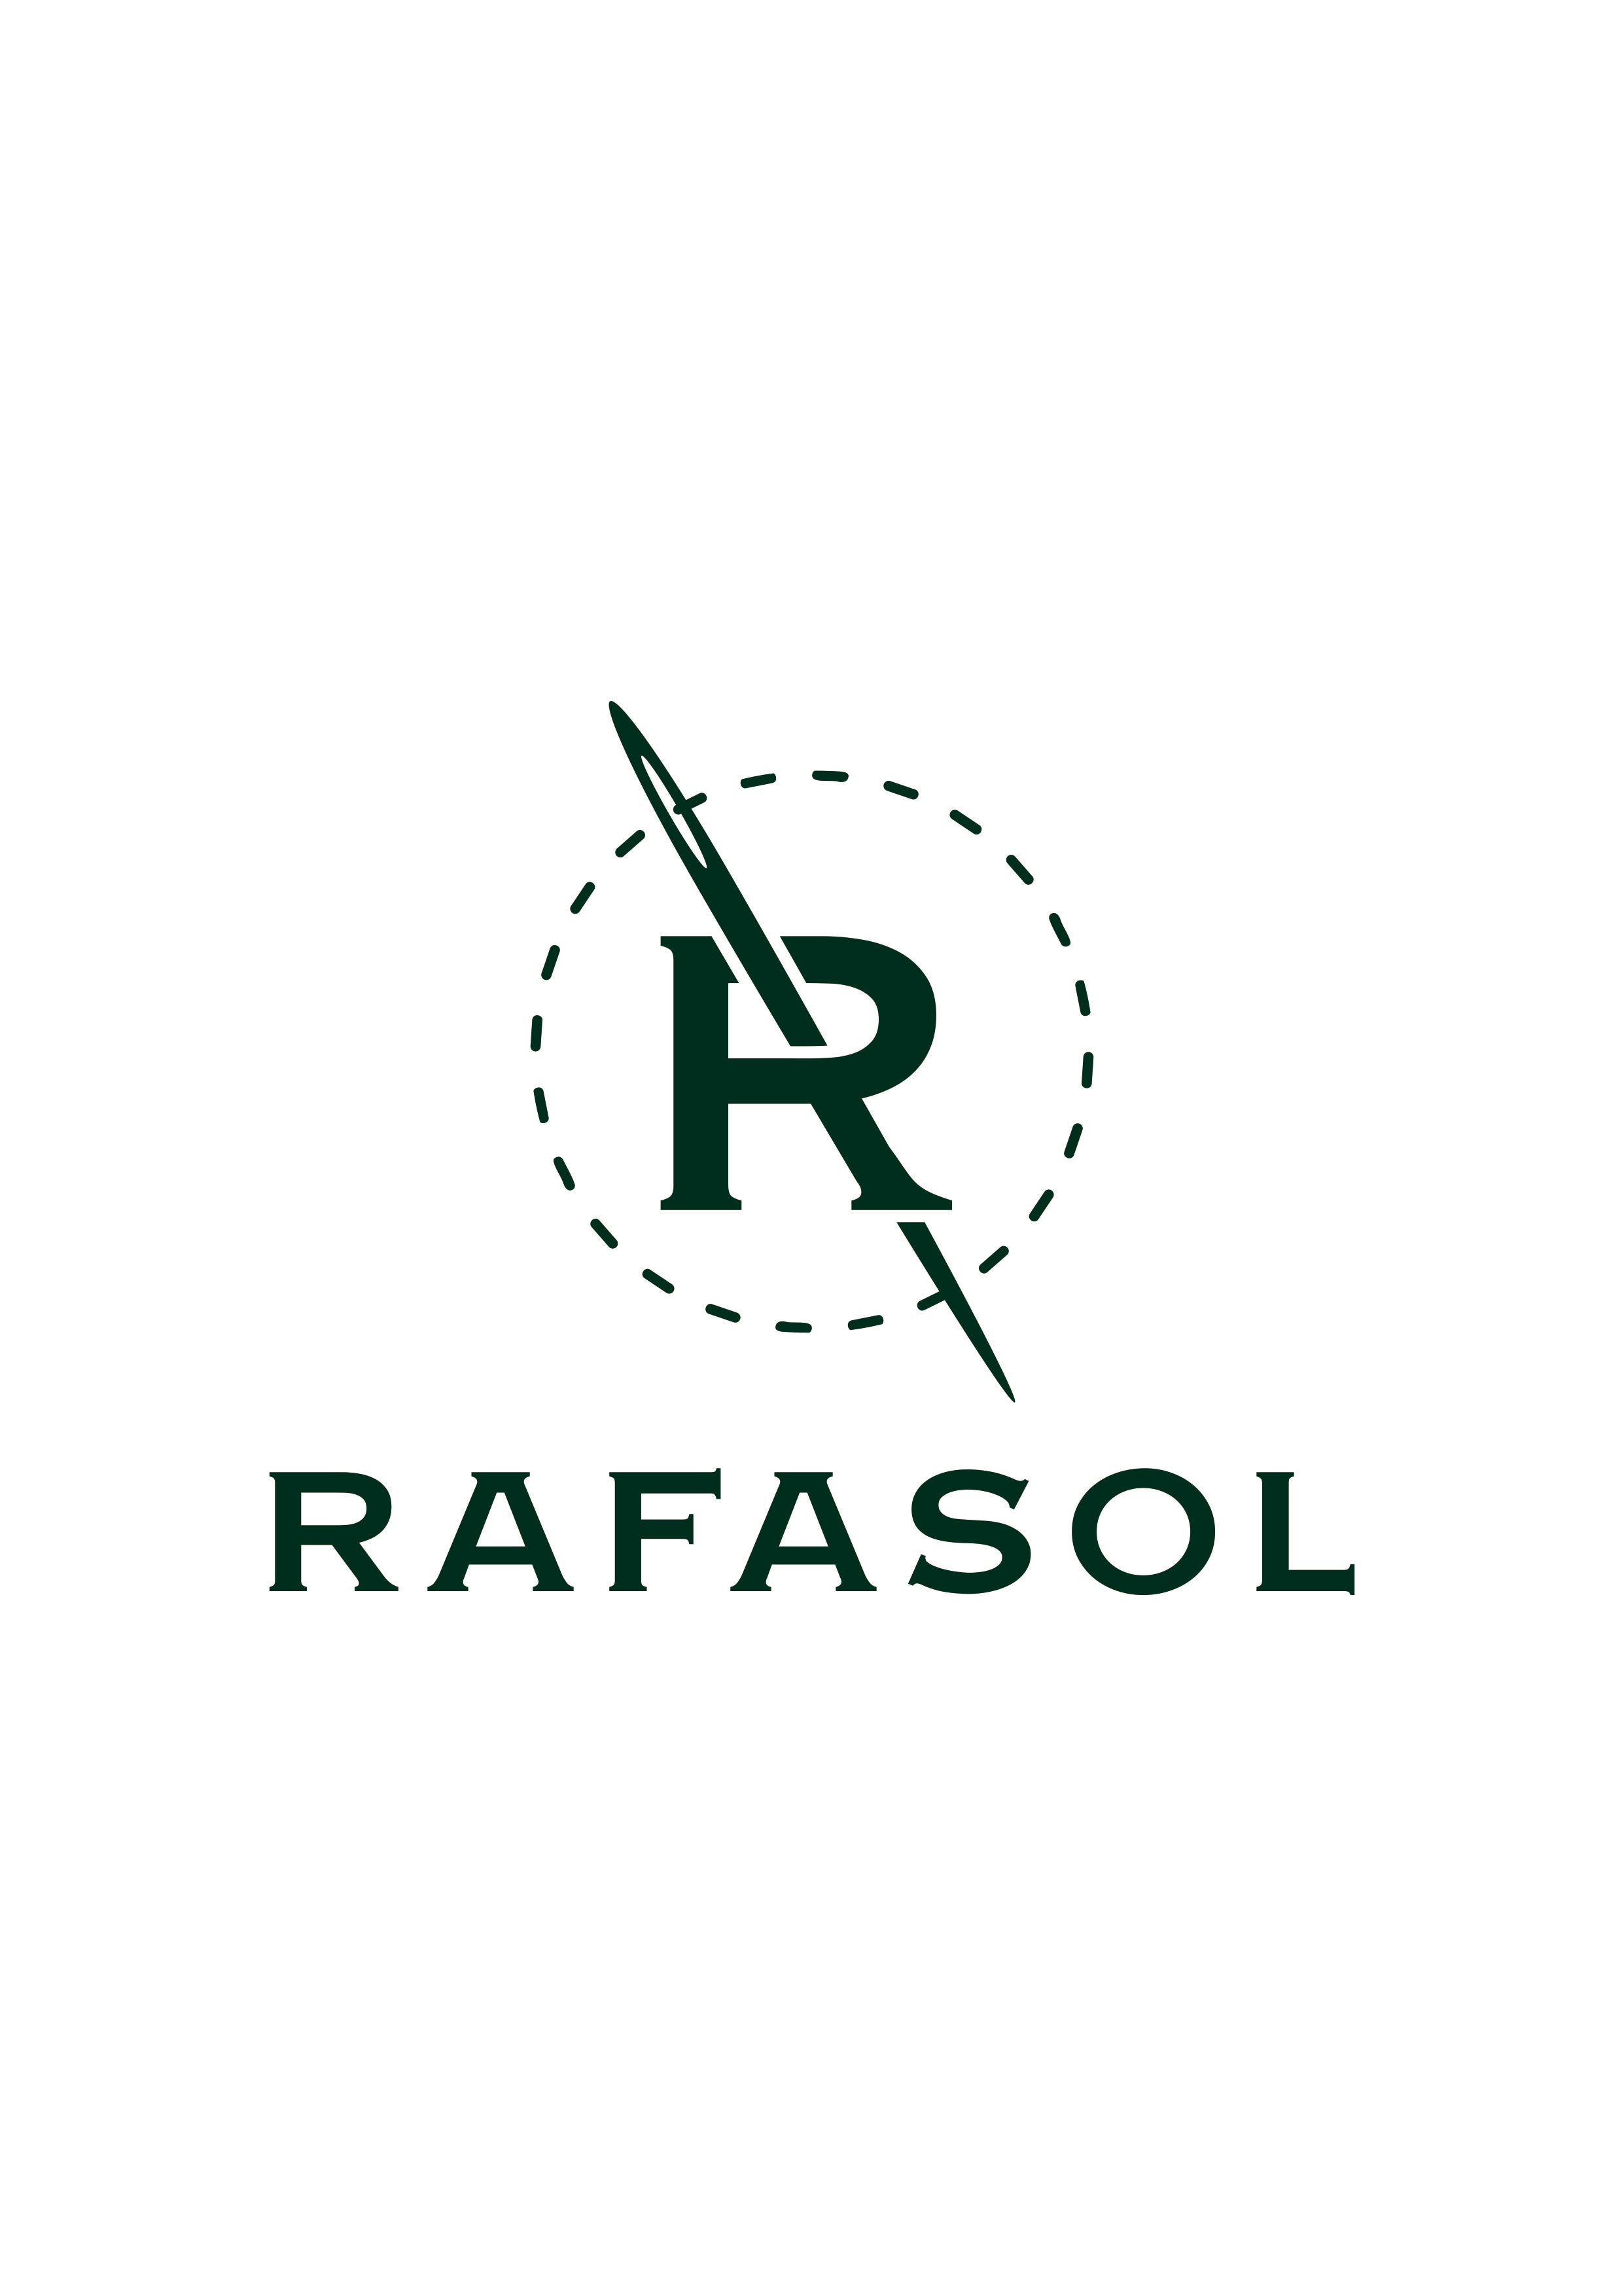 Rafasol